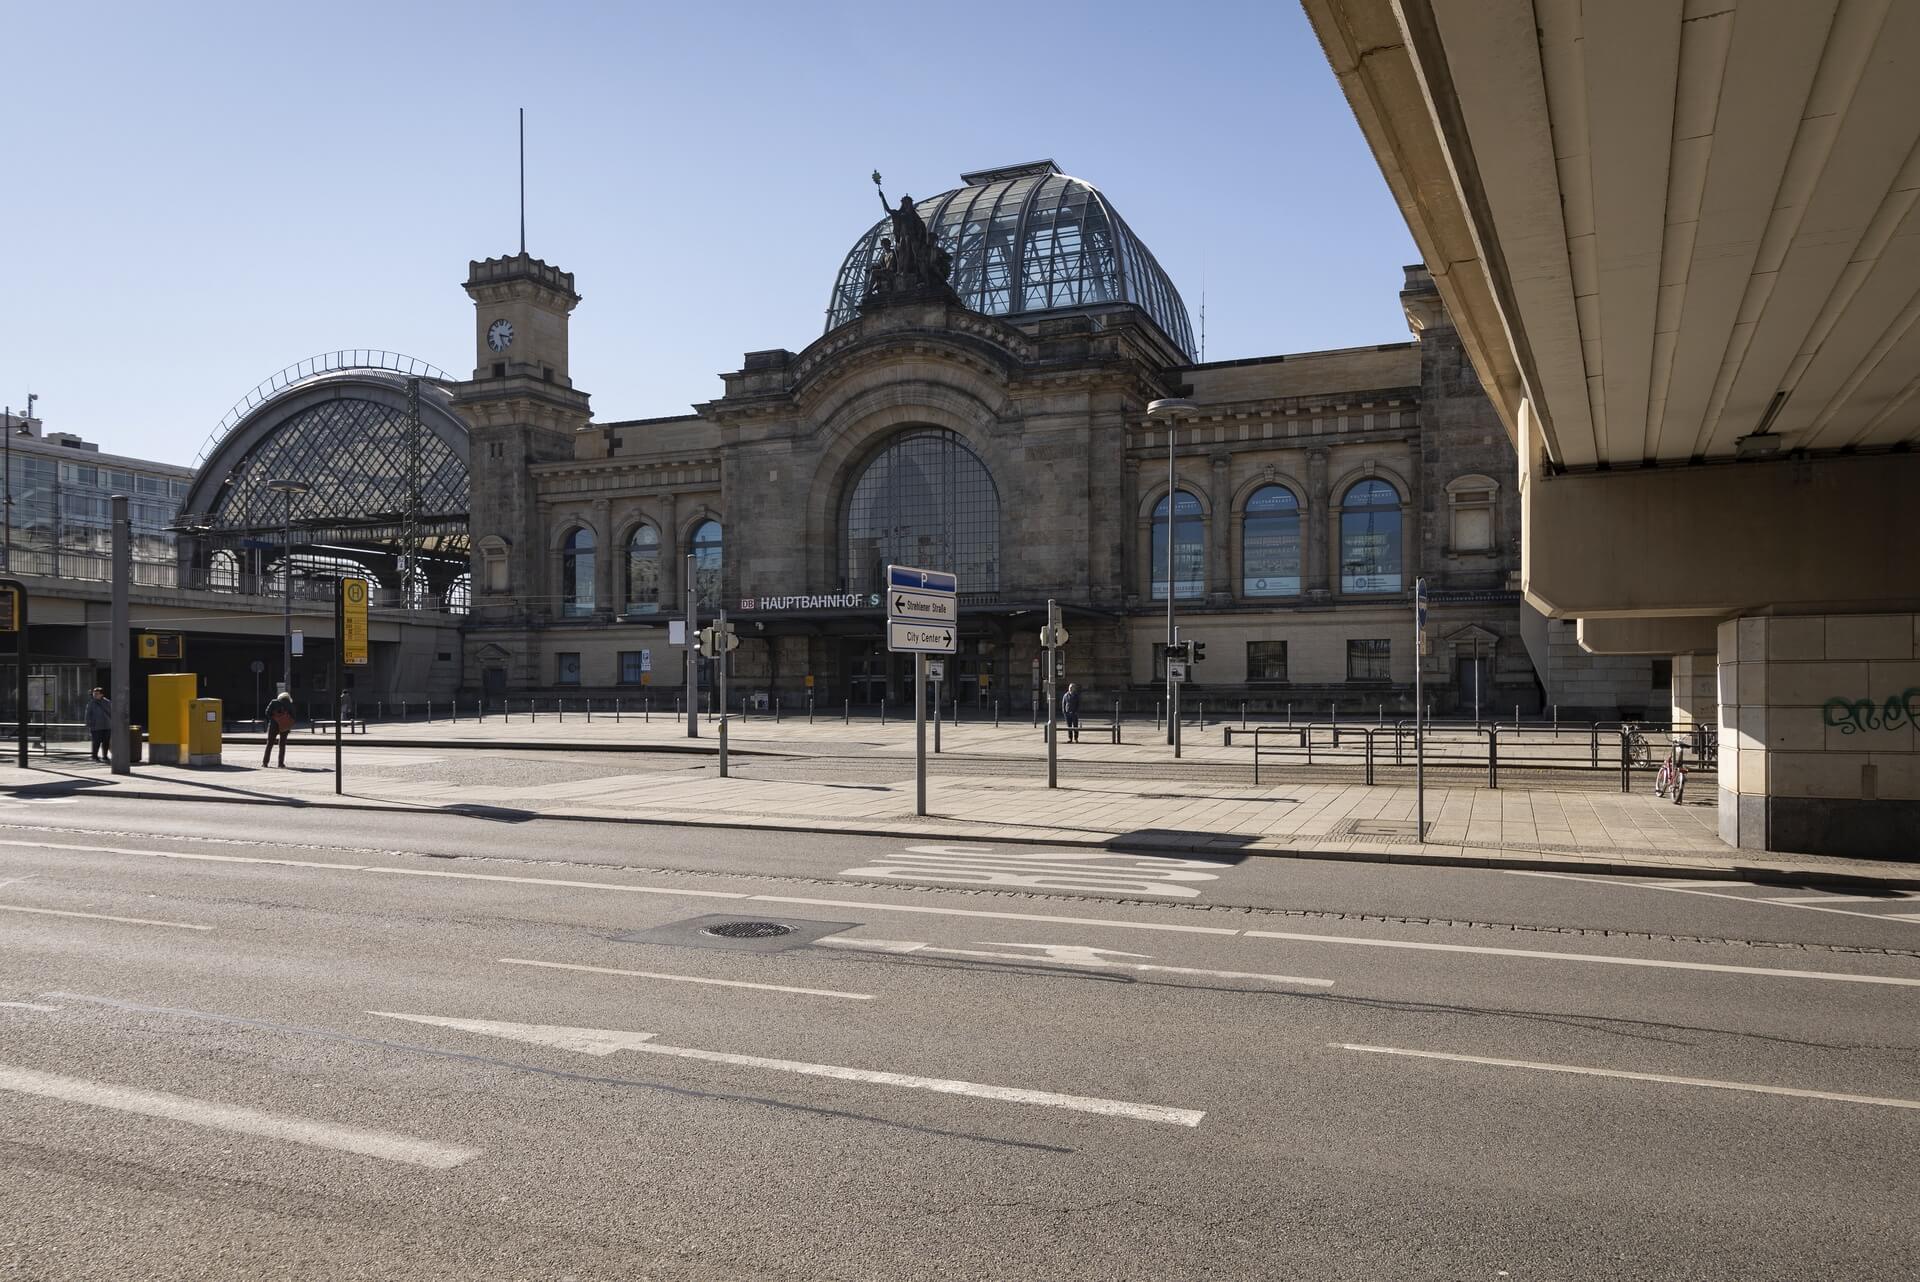 Dresden: Hauptbahnhof, Frühjahr 2020, Eindrücke von der Ausgangsbeschränkung während der COVID-19 Pandemie